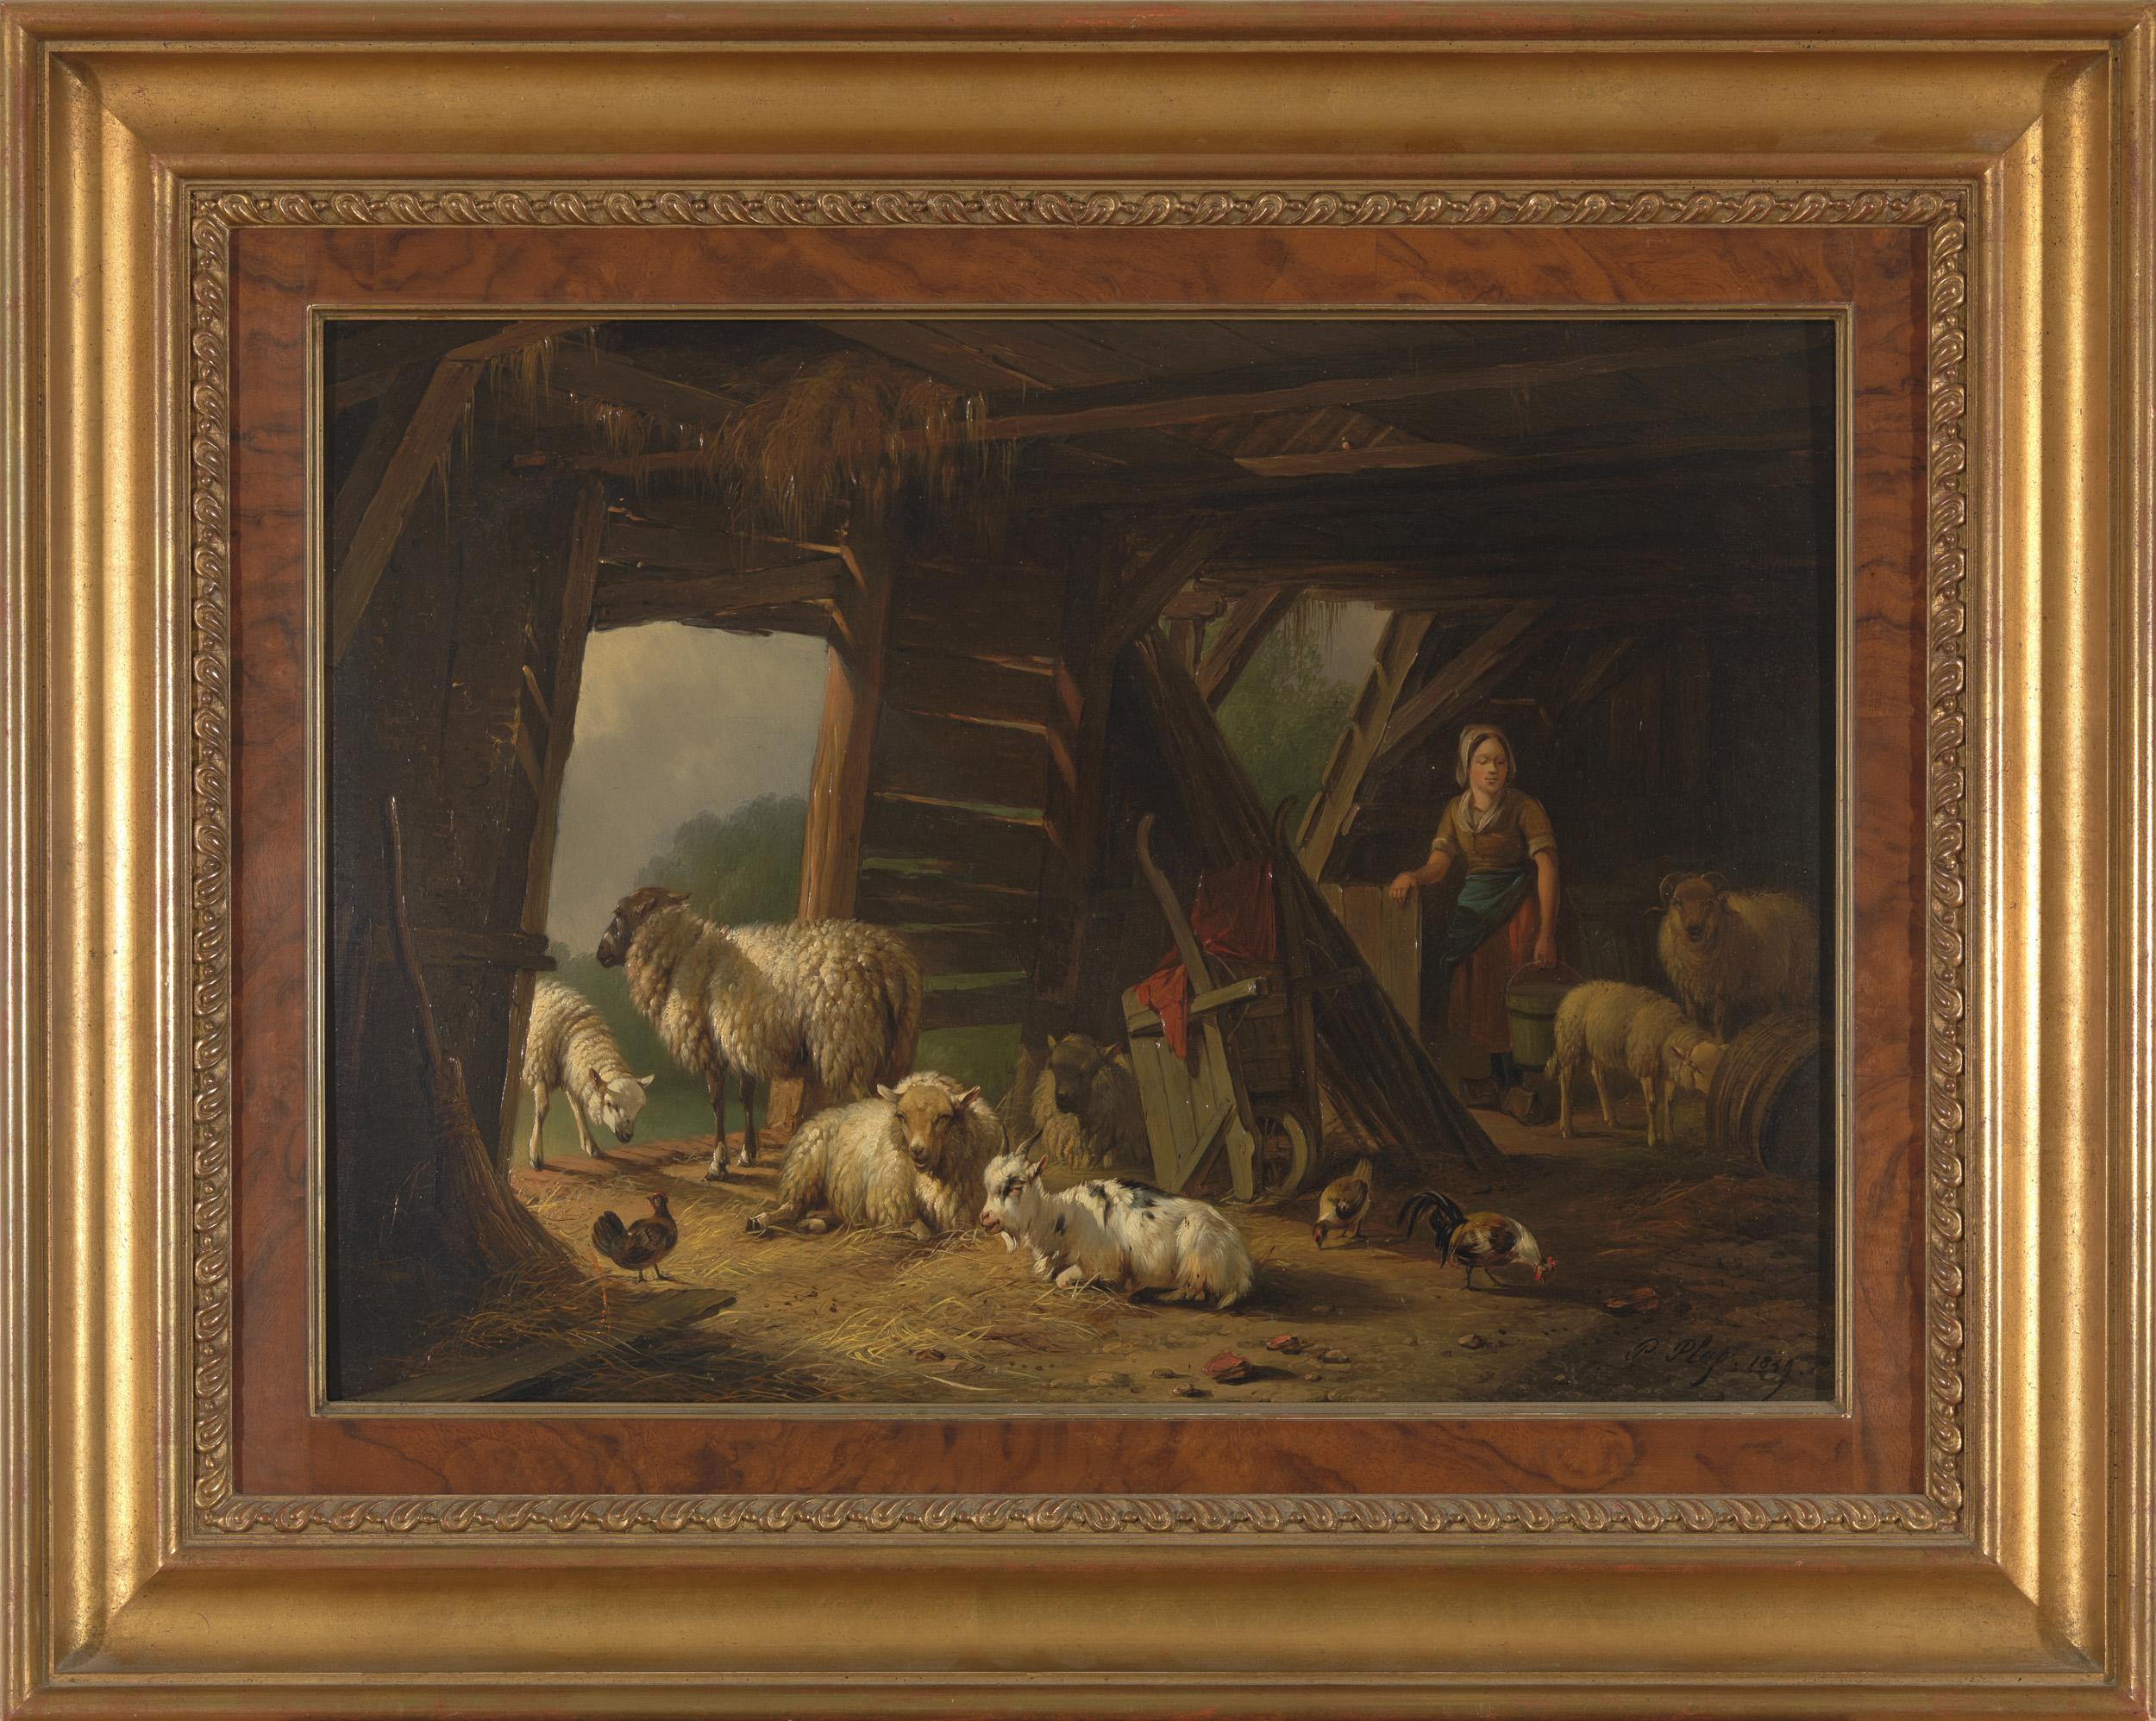 Animal Painting Pieter Plas - 19ème siècle, romantisme, peinture de genre, mouton 